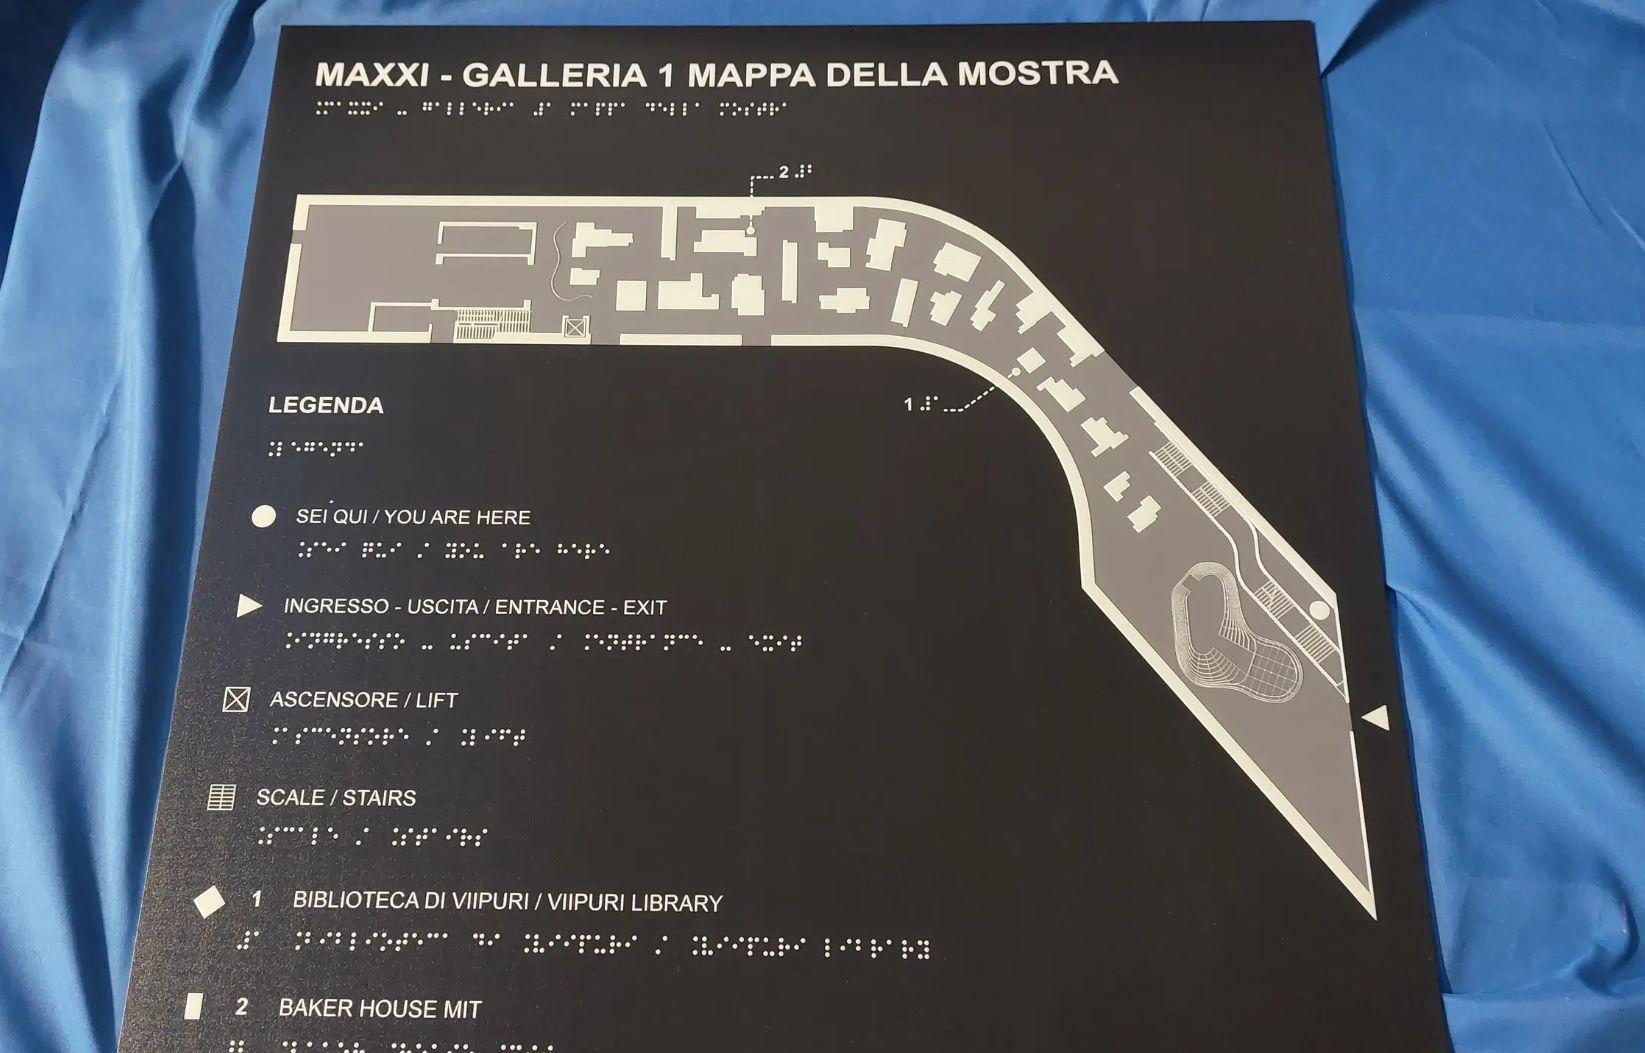 Mappa tattile - MUSEO MAXXI